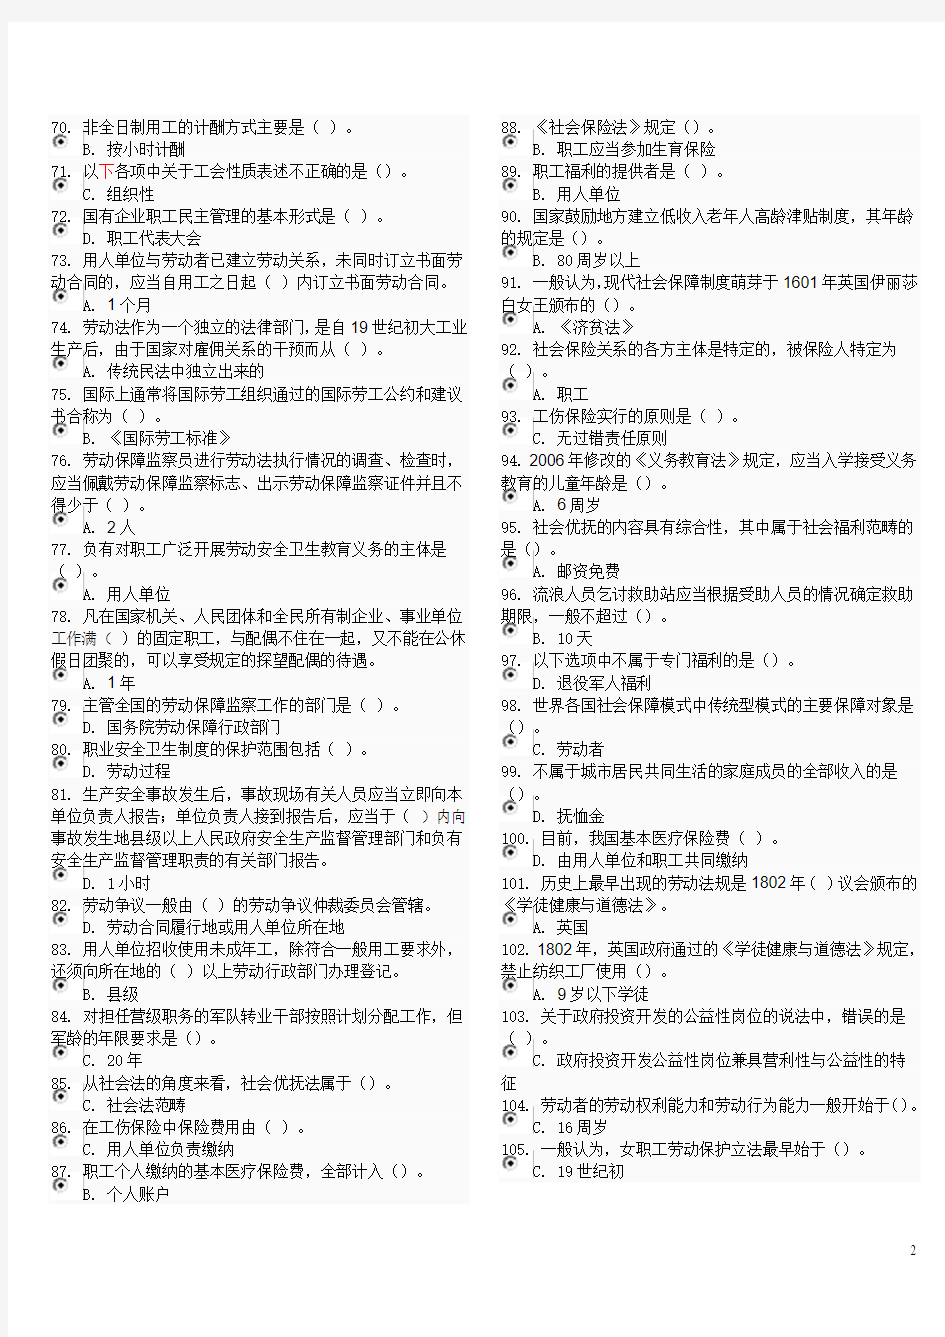 (完整word版)2016劳动法与社会保障法电大机考资料(完整版)